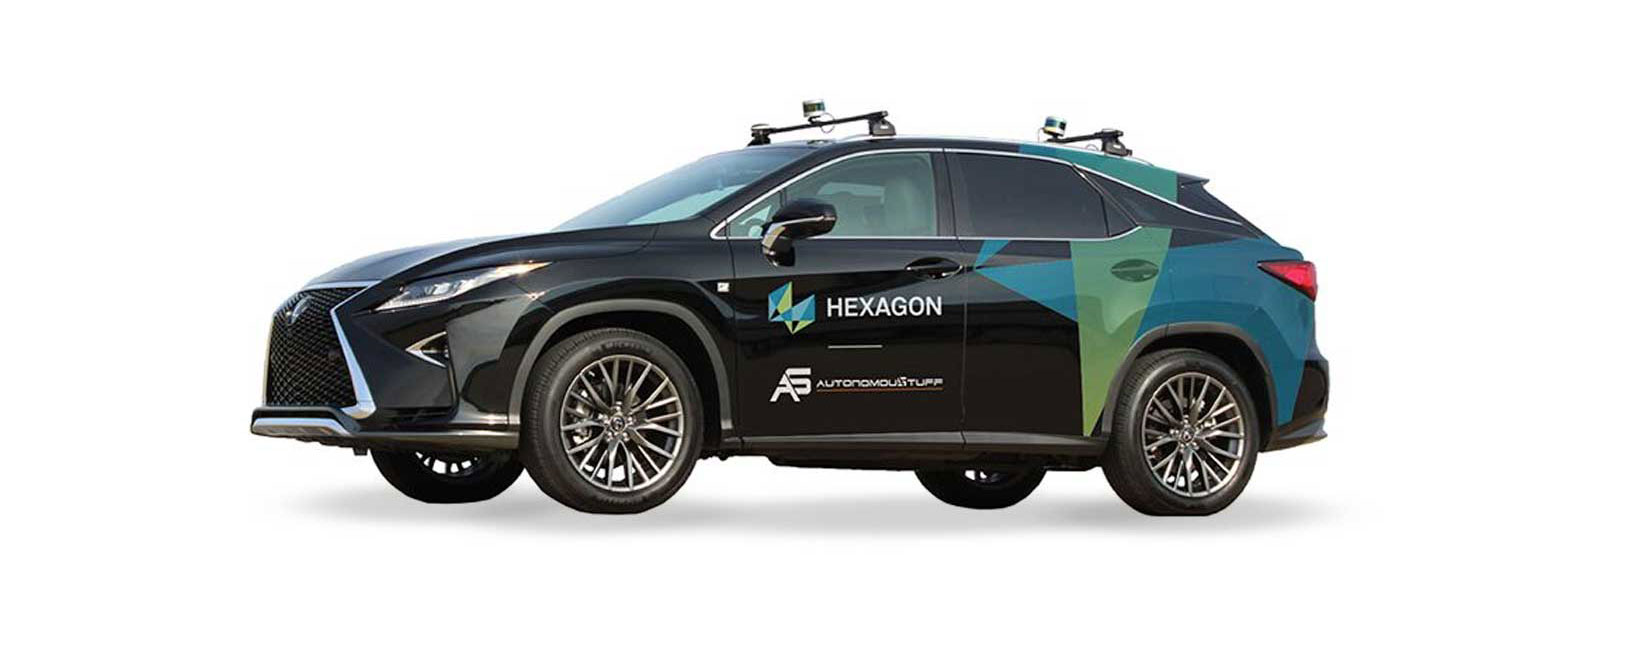 Imagem de veículo da marca Hexagon com recursos autônomos